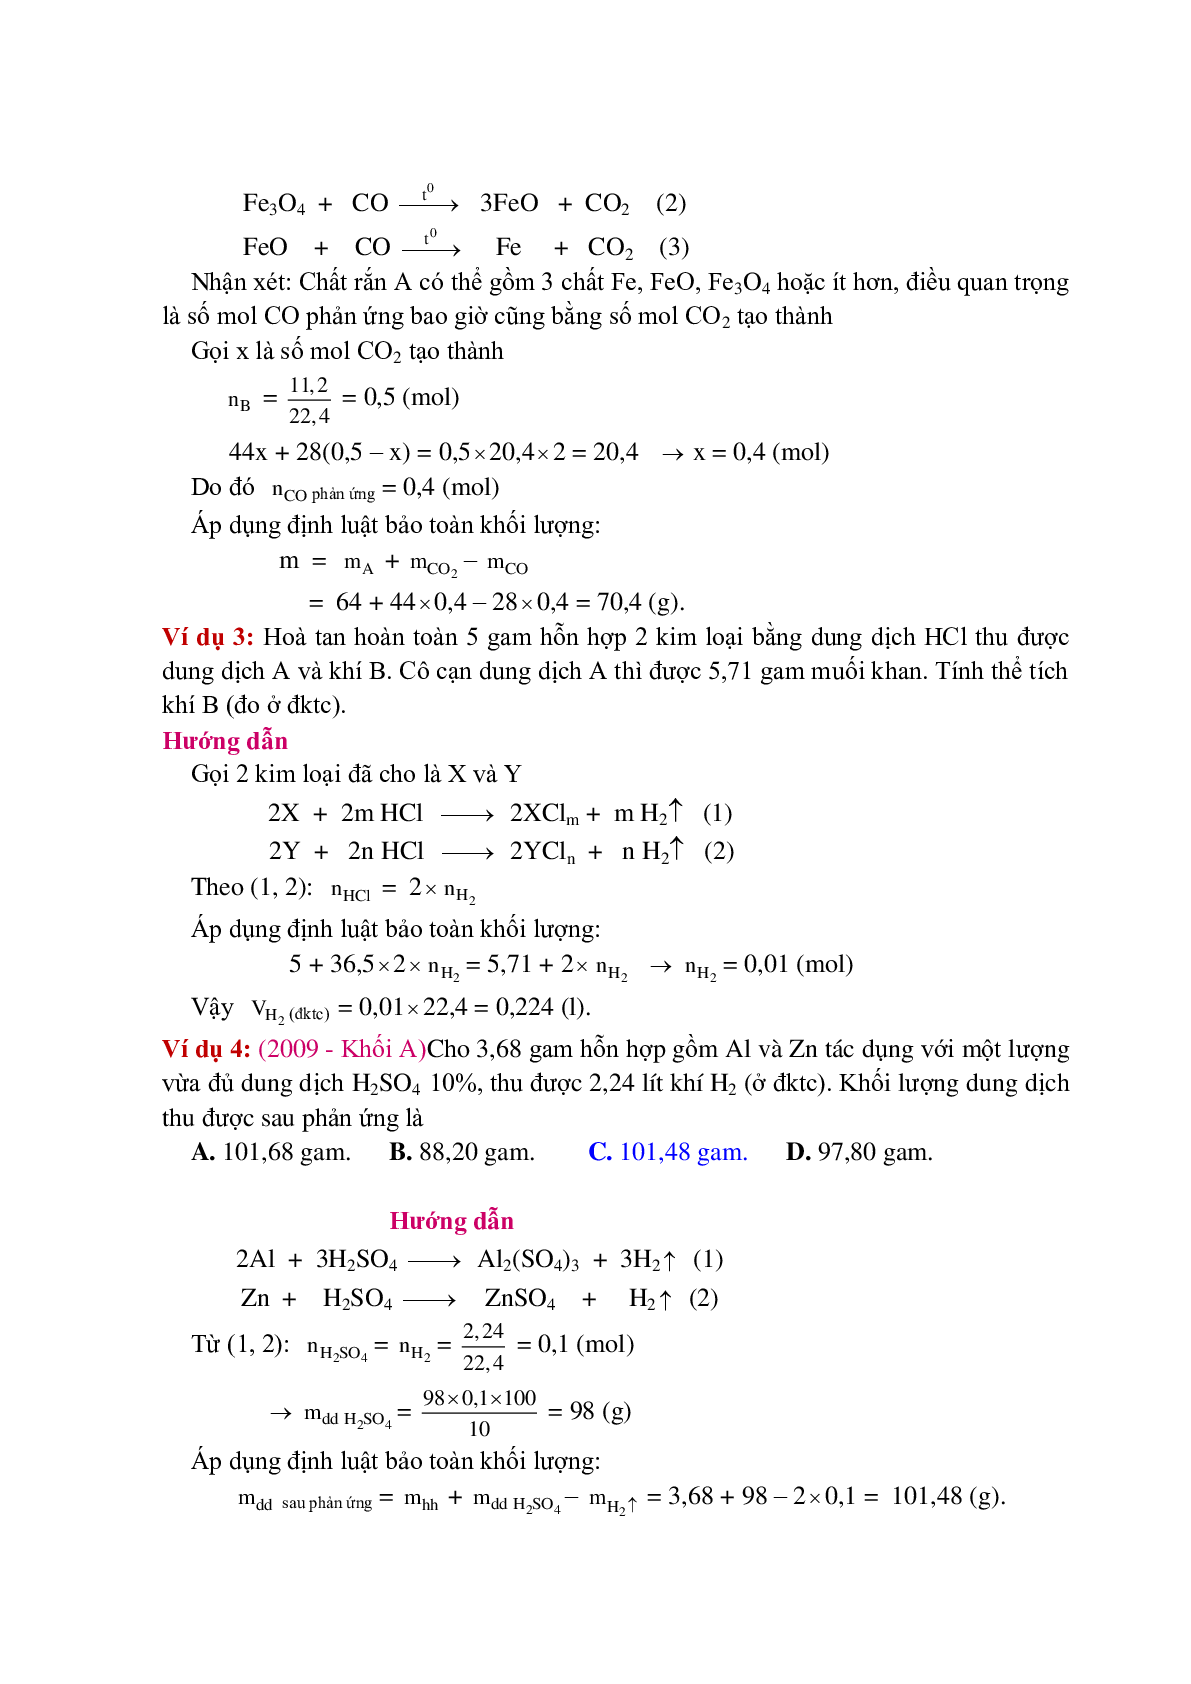 Lý thuyết, bài tập về Phương pháp bảo toàn khối lượng có đáp án (trang 2)